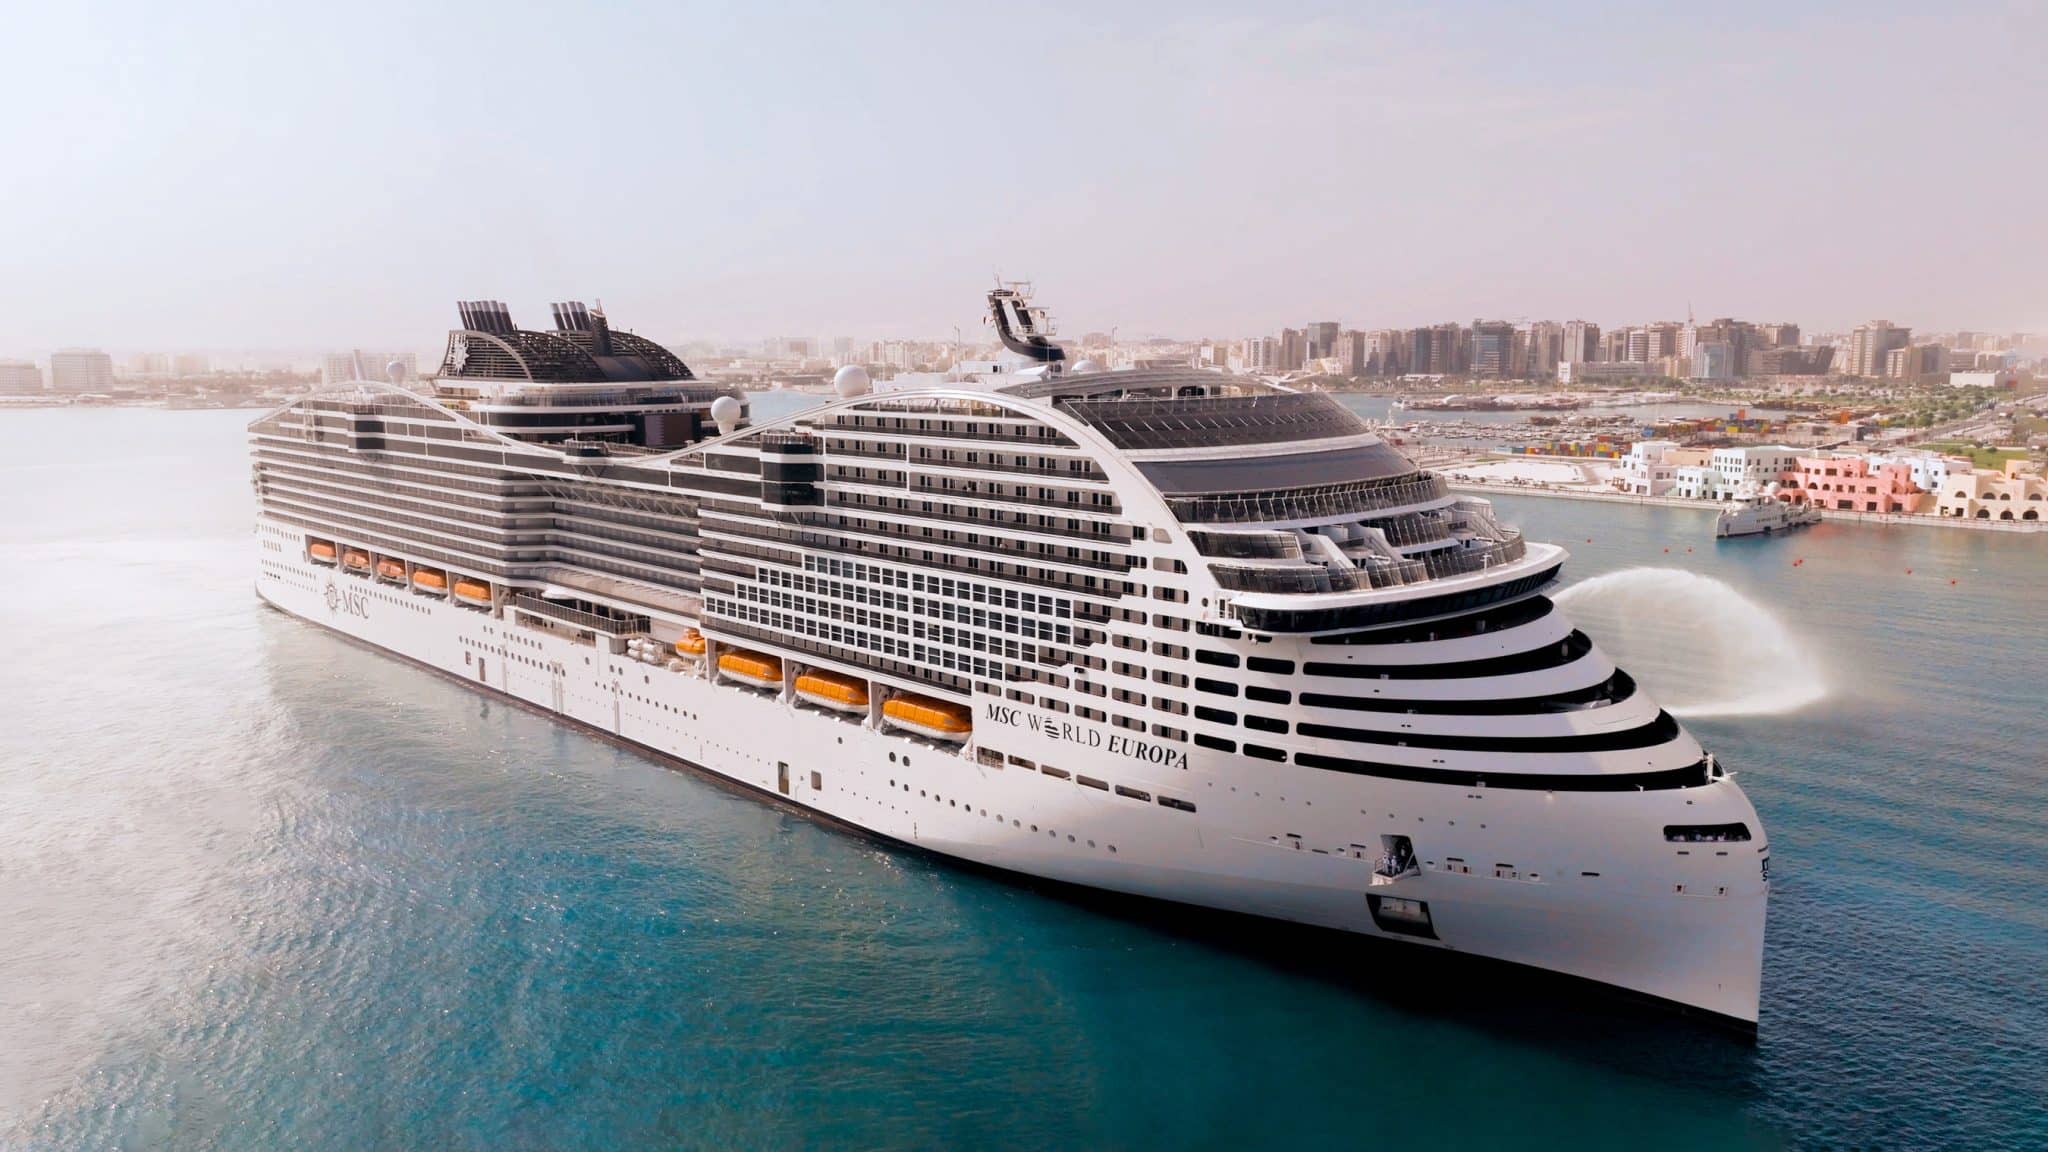 msc cruises largest ship